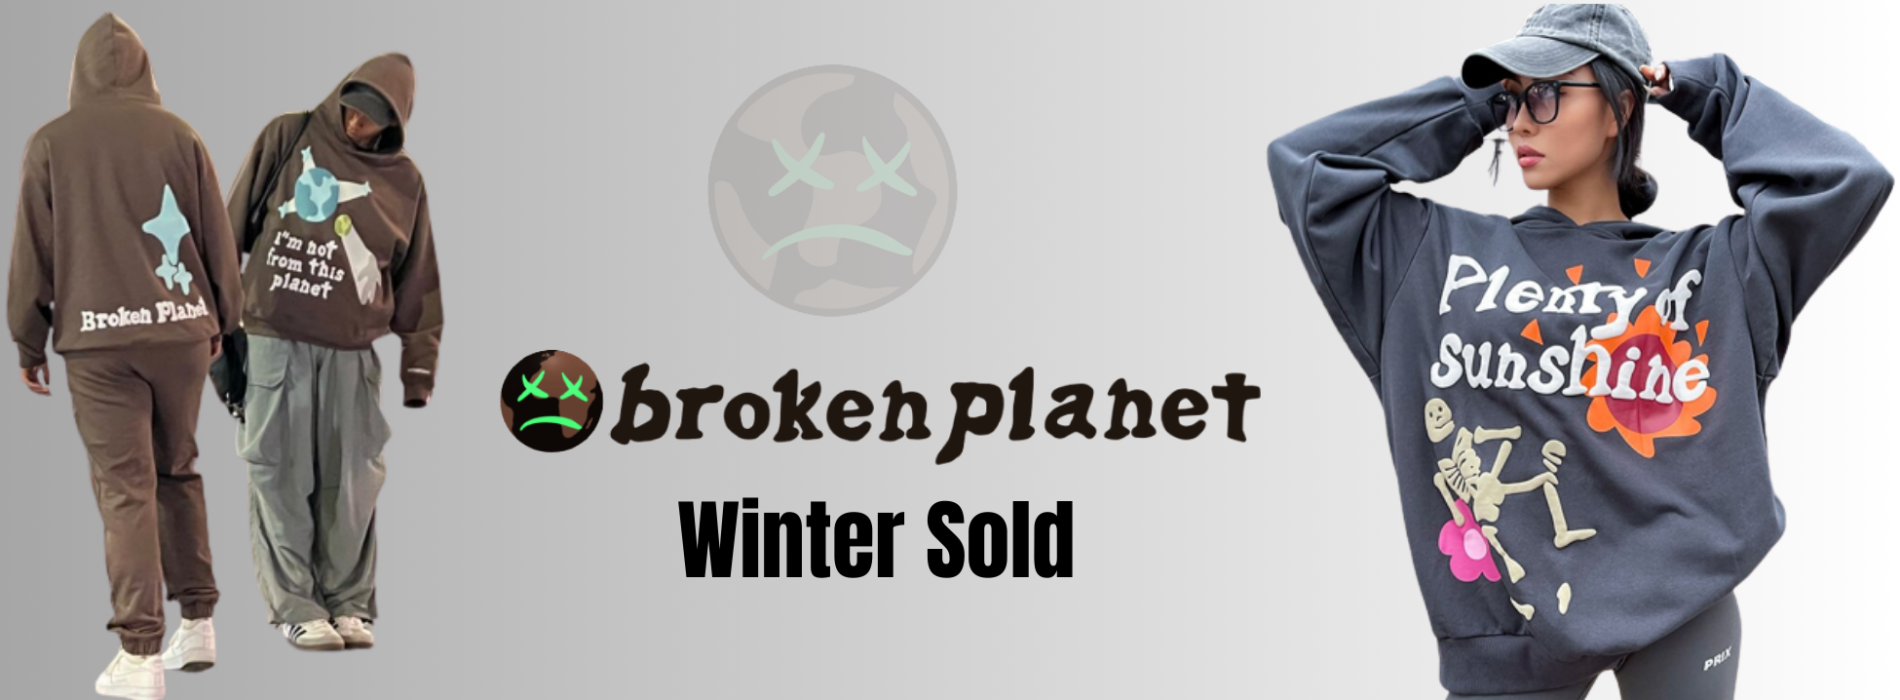 broken planet hoodie banner